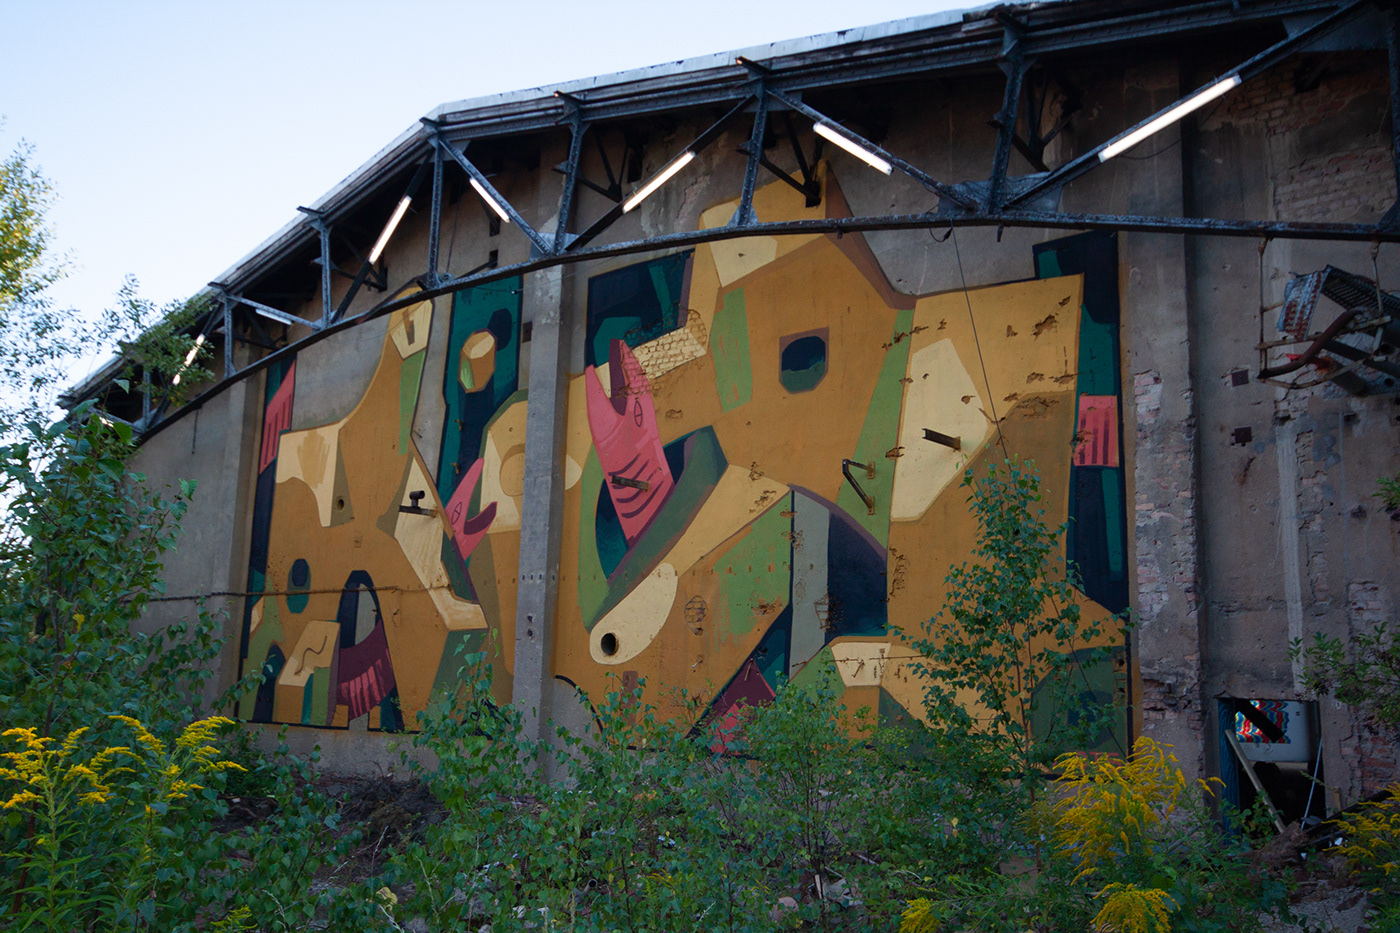 Mural Street Art  Graffiti urban art Murals Mots festival acrylic painting   abandoned